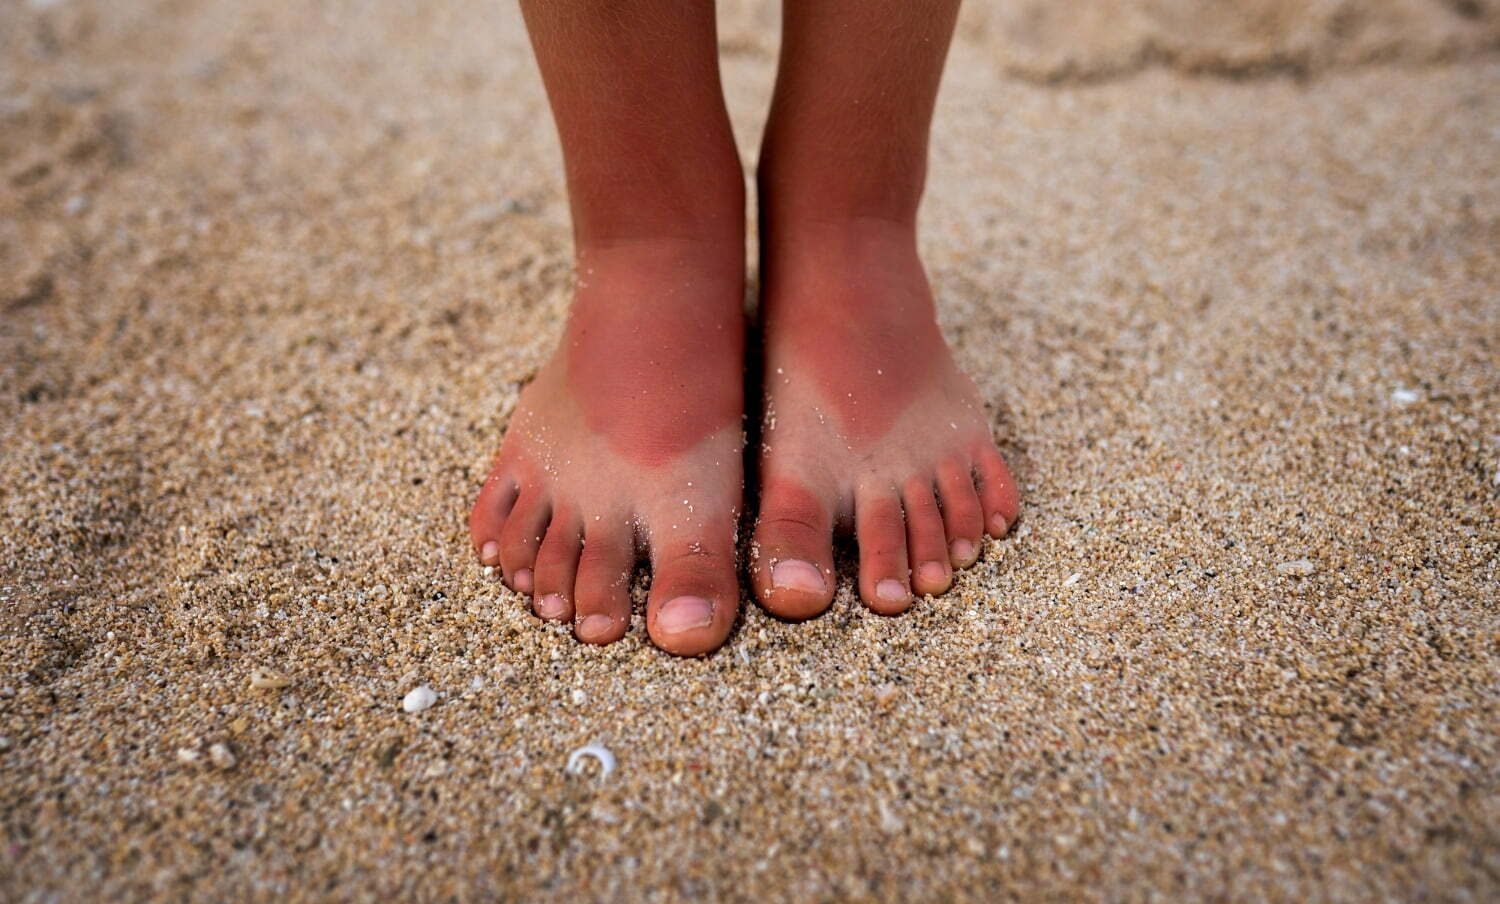 pies de niña sobre la arena insolación